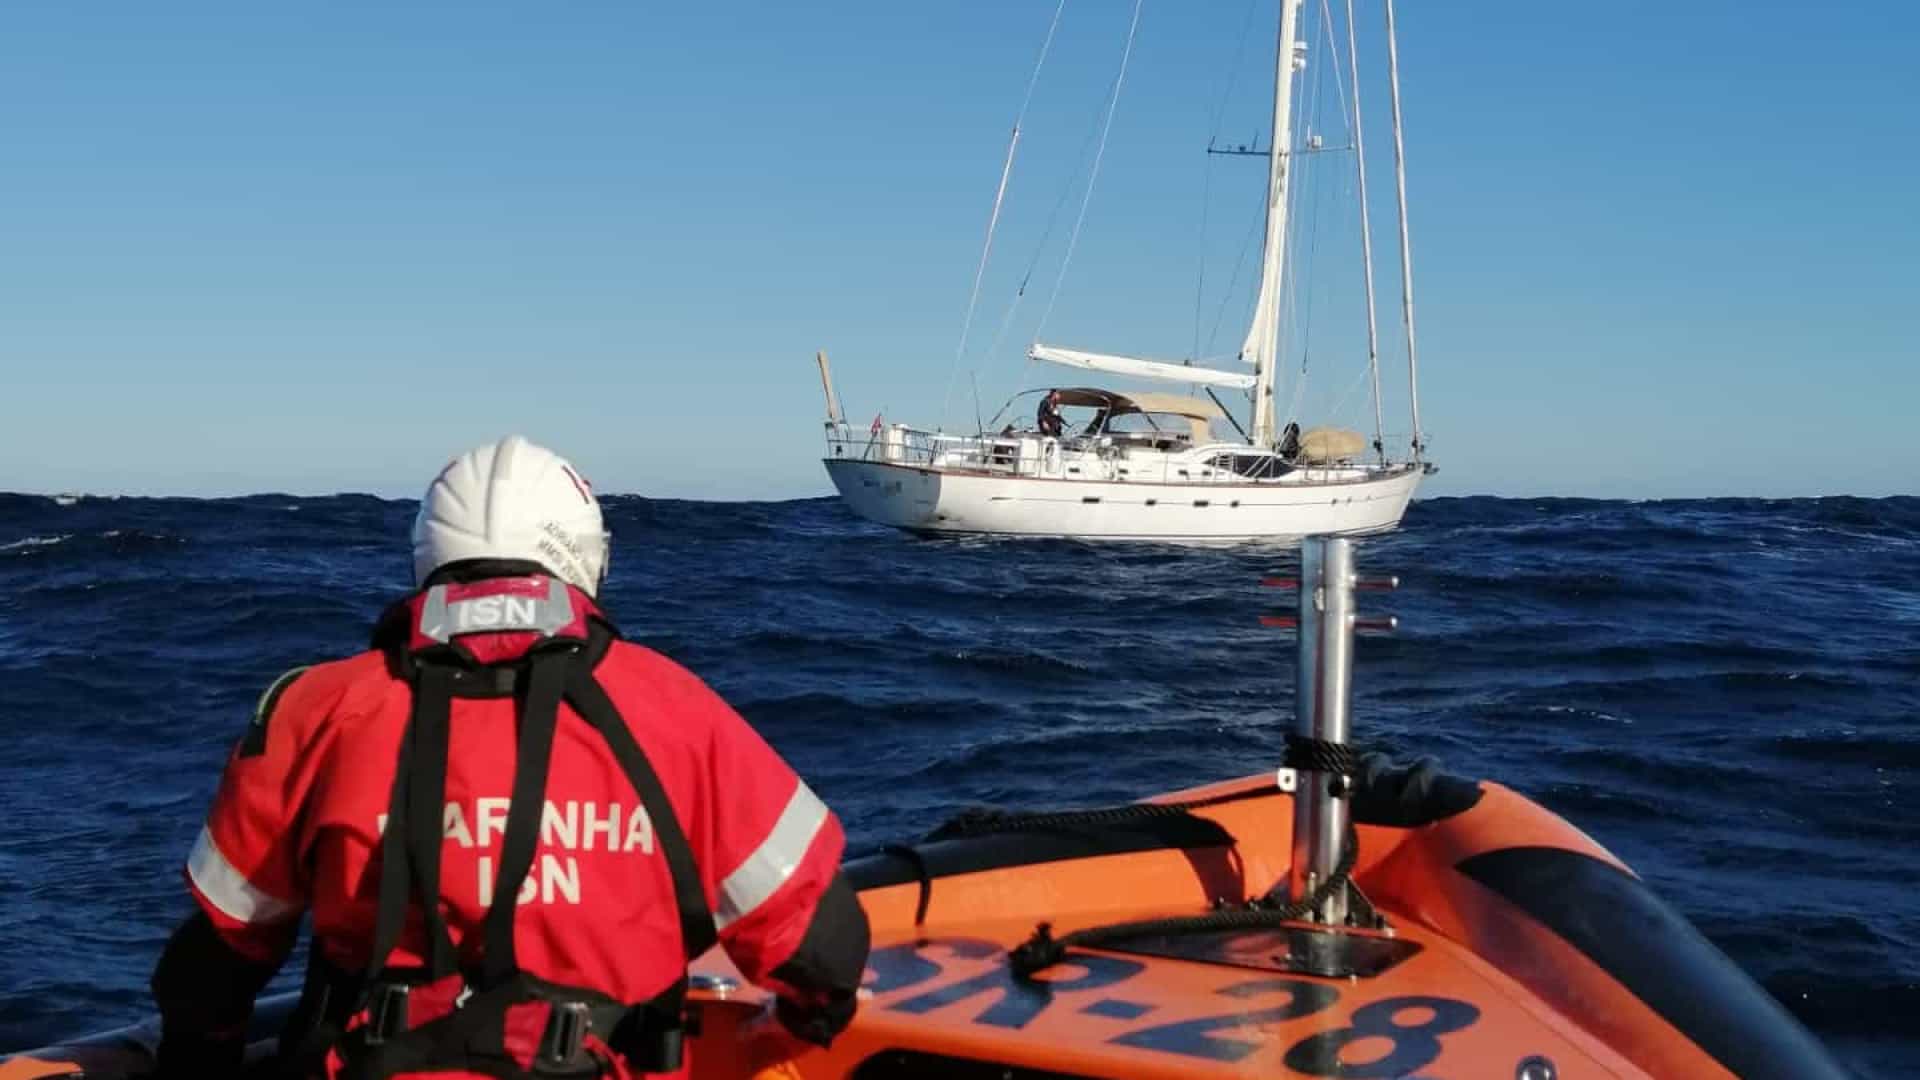 Jovem inglês de 20 anos resgatado de veleiro a 120 km do porto de Leixões